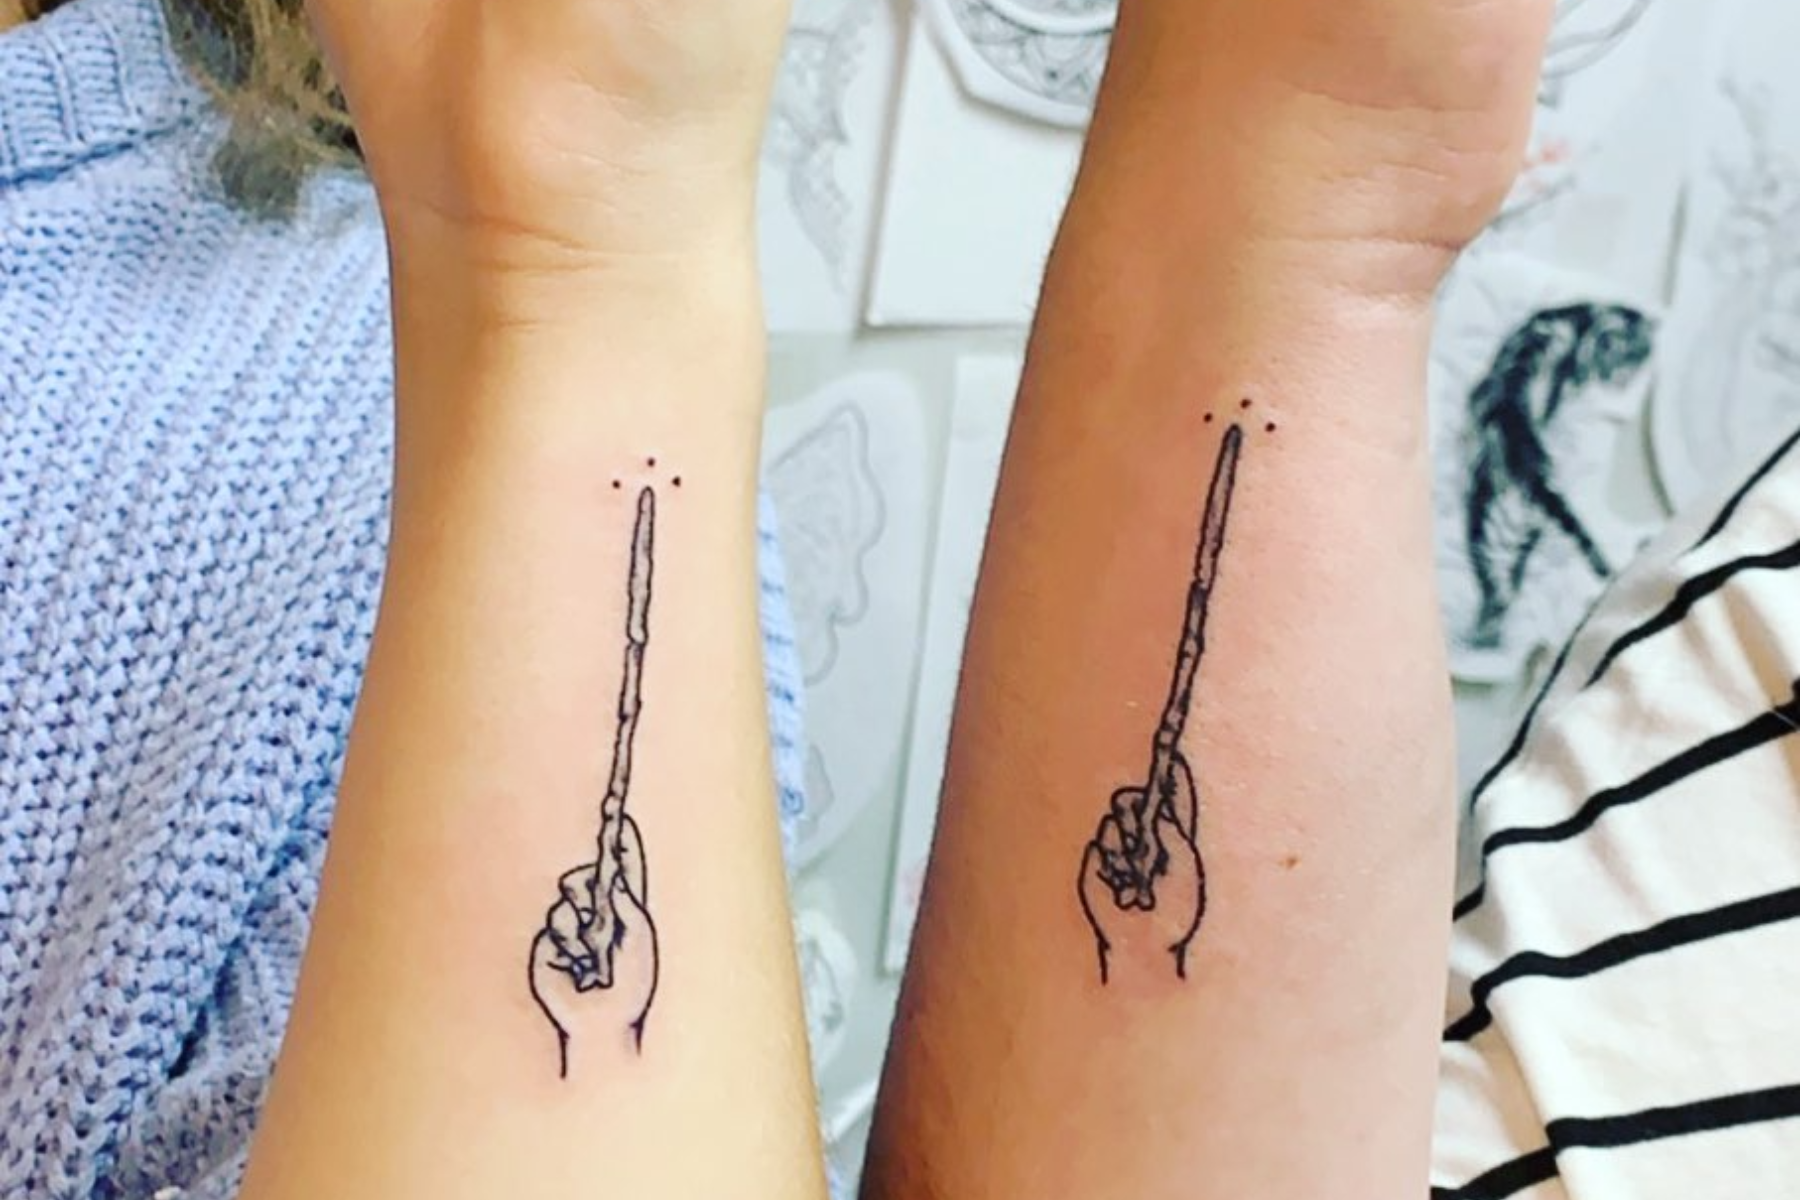 Hogwarts Castle Tattoo Art | Los Angeles Tattoo Artist — 1MM Tattoo Studio